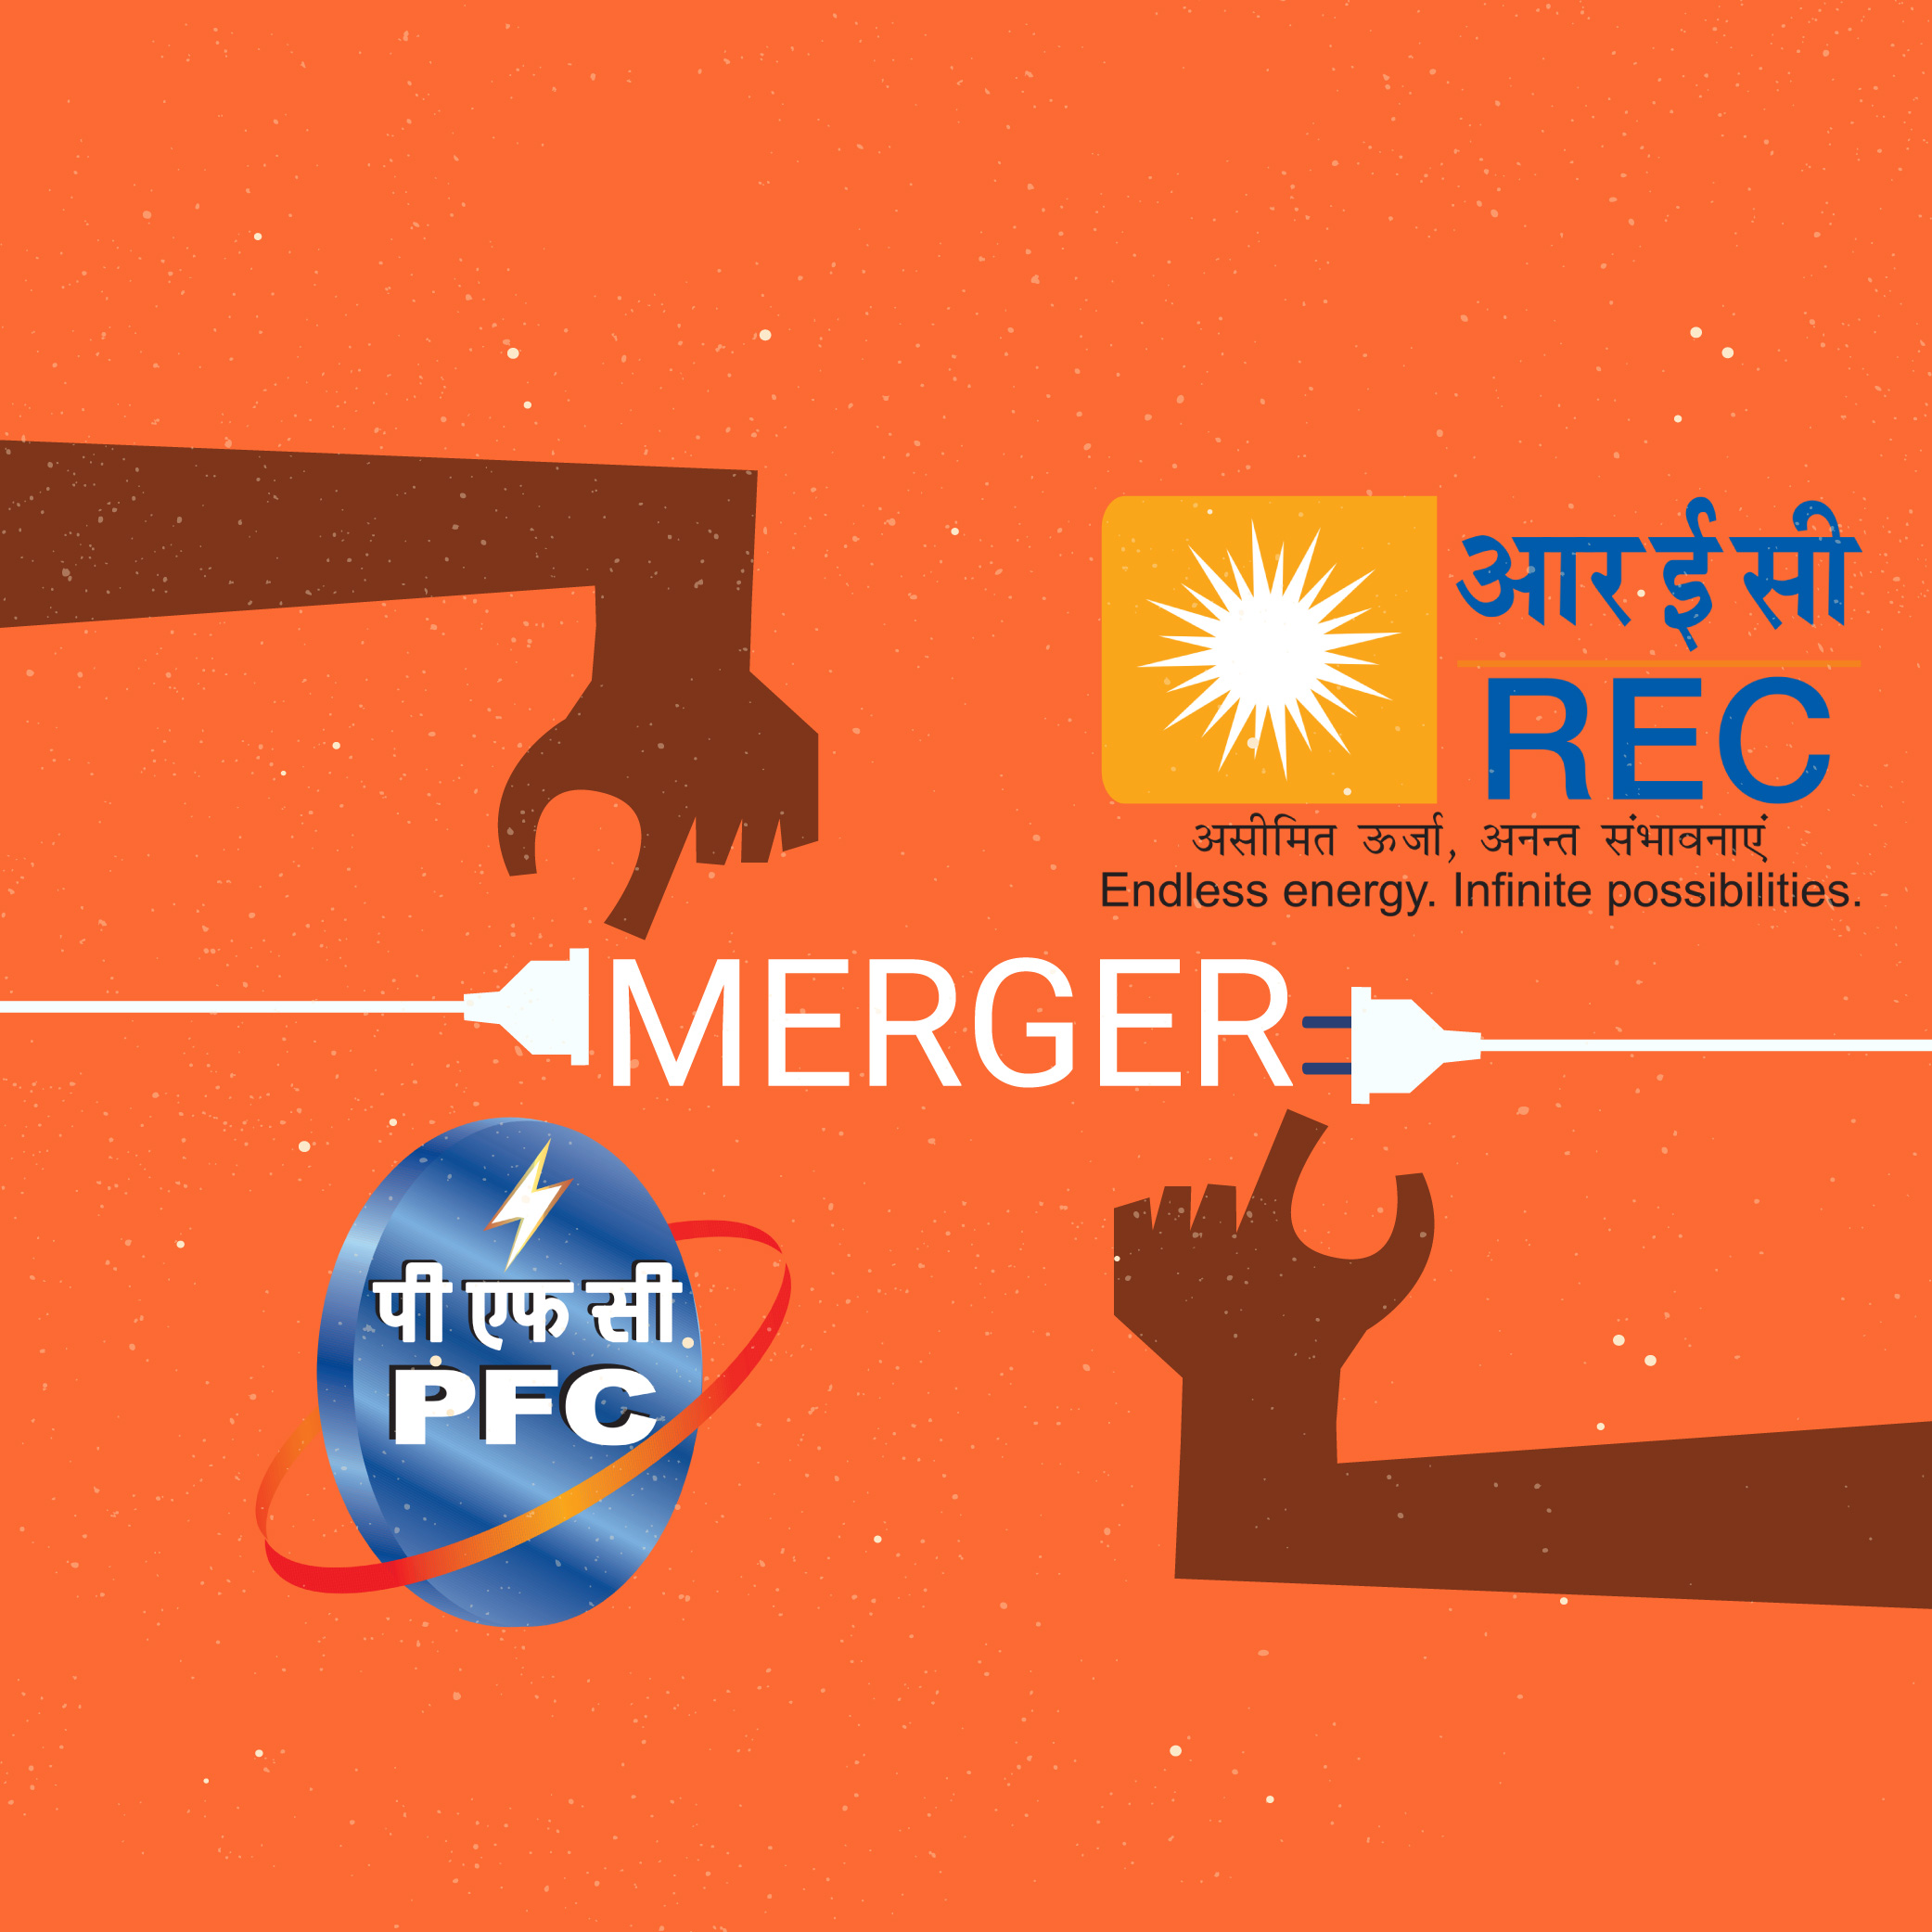 PFC-REC-Merger-Disinvestment